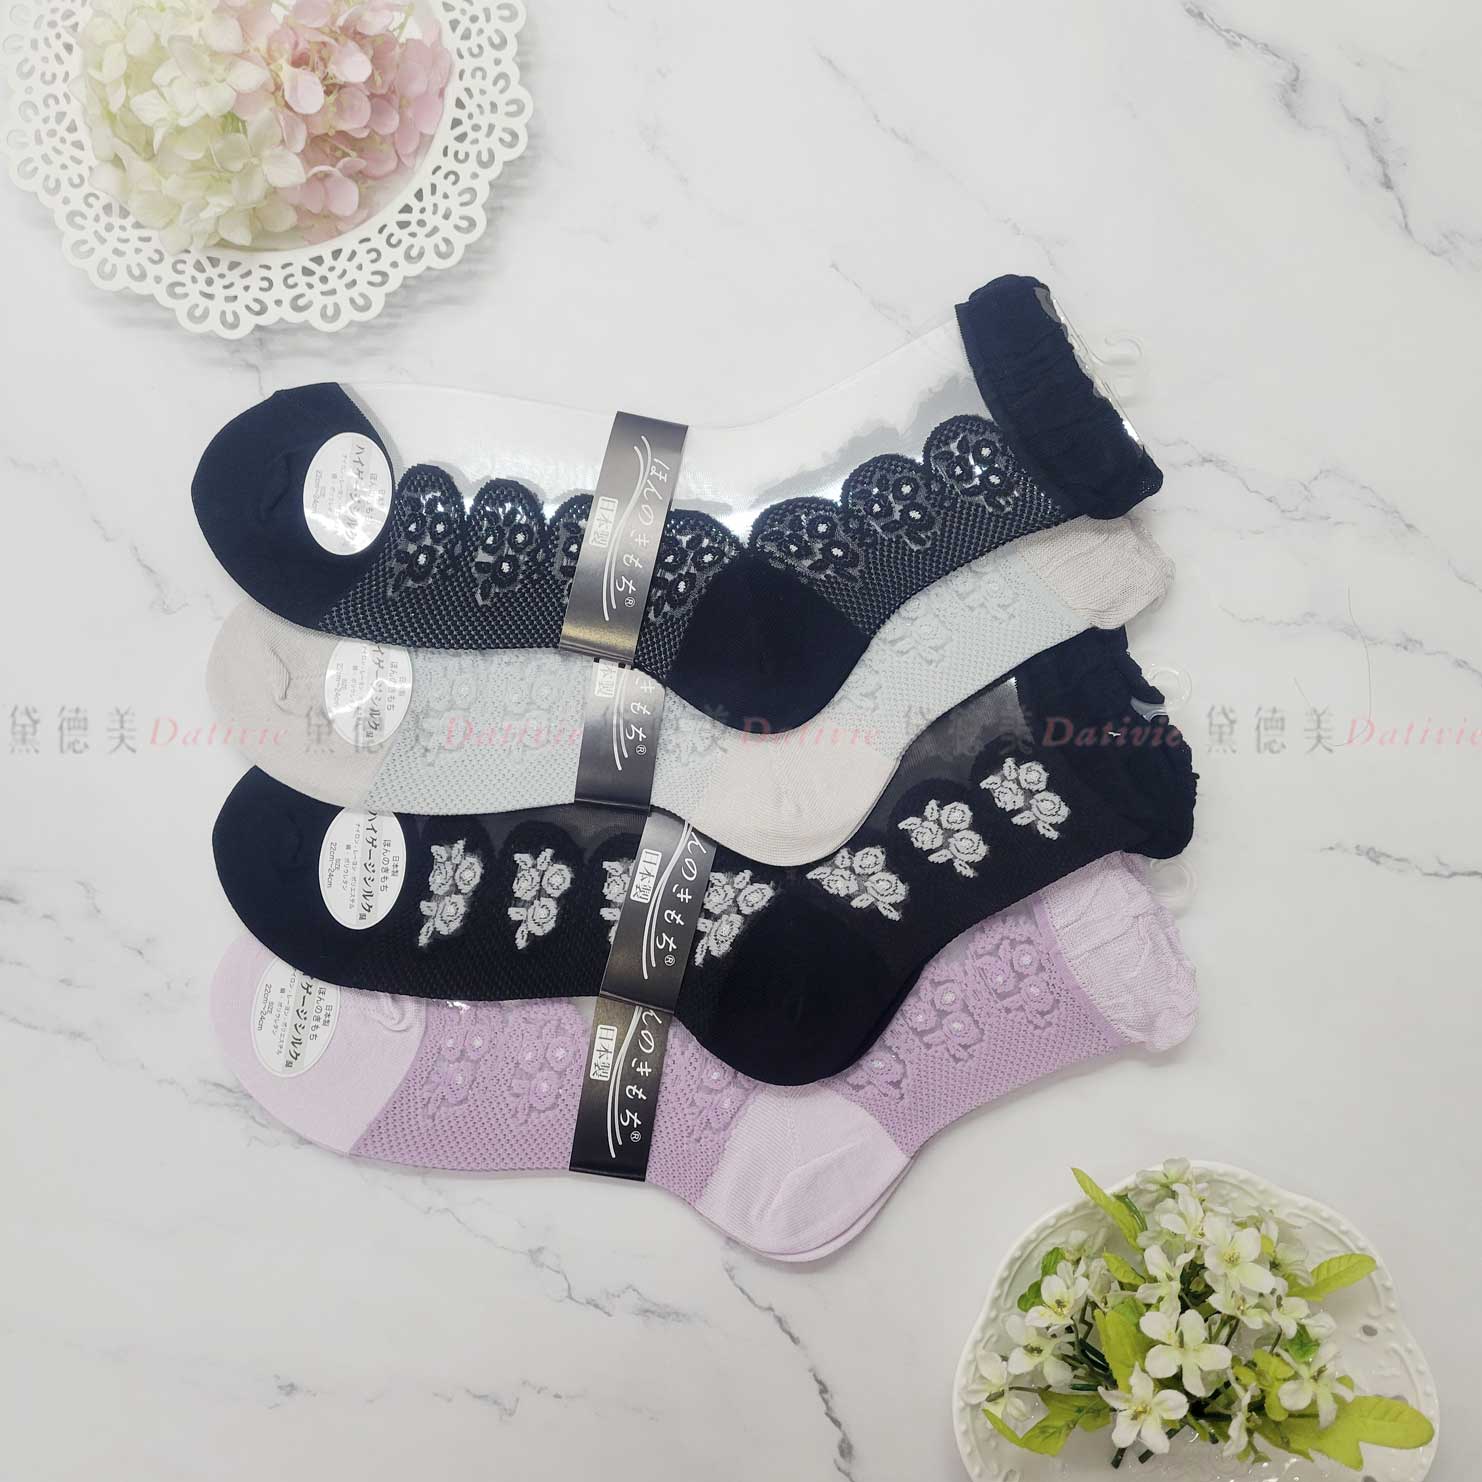 日本襪 透膚 花朵 花邊 少女襪 24-26cm-日本製造